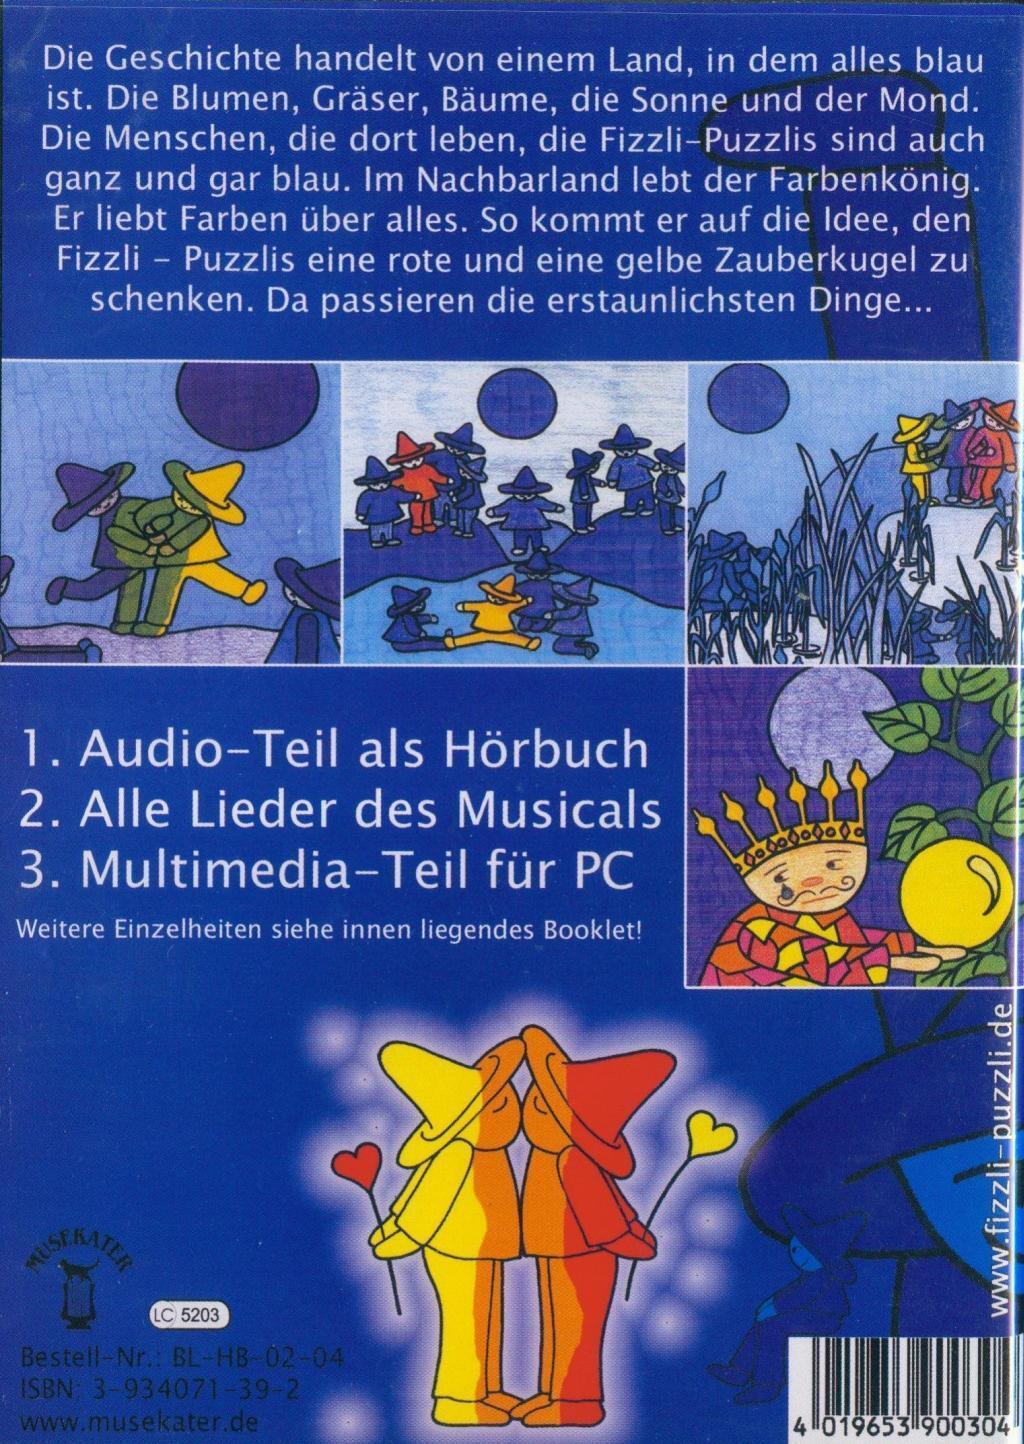 Bild: 4019653900304 | Kennt Ihr Blauland, CD+Multimedia-Teil | Hörbuch zum Familienmusical